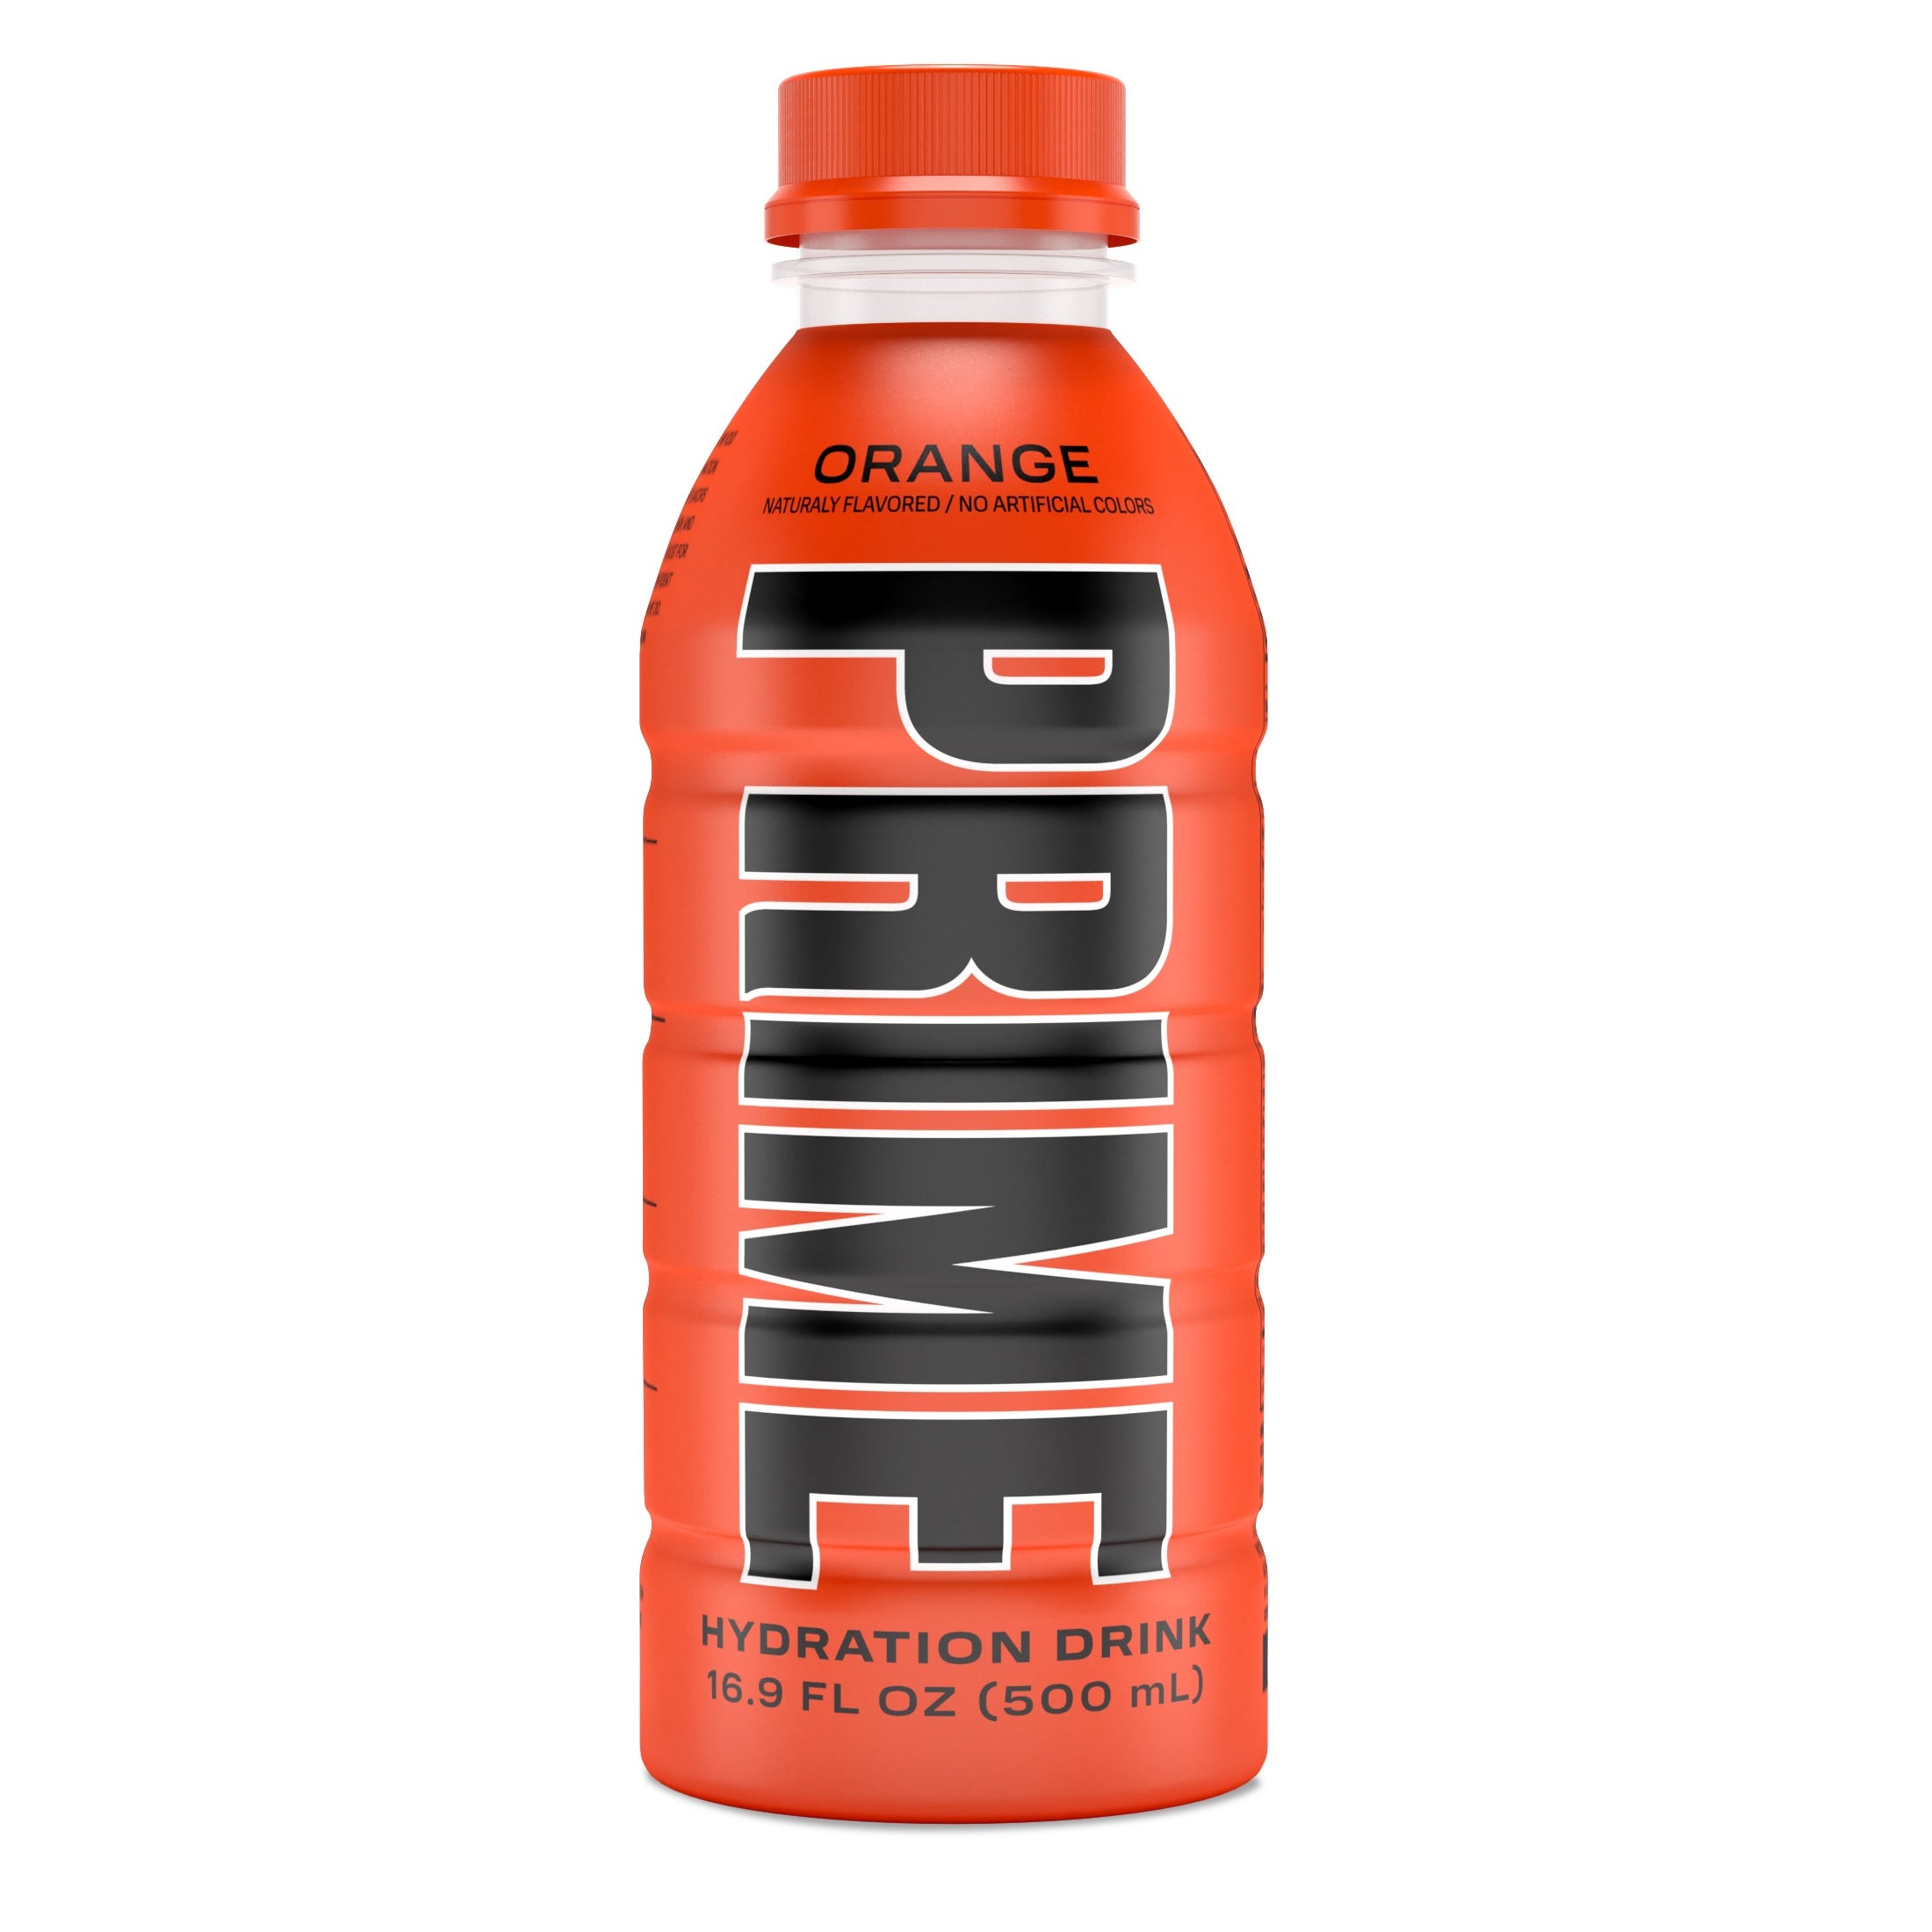 Prime Hydration Drink, Orange, 16.9 fl oz, Single Bottle - image 1 of 2